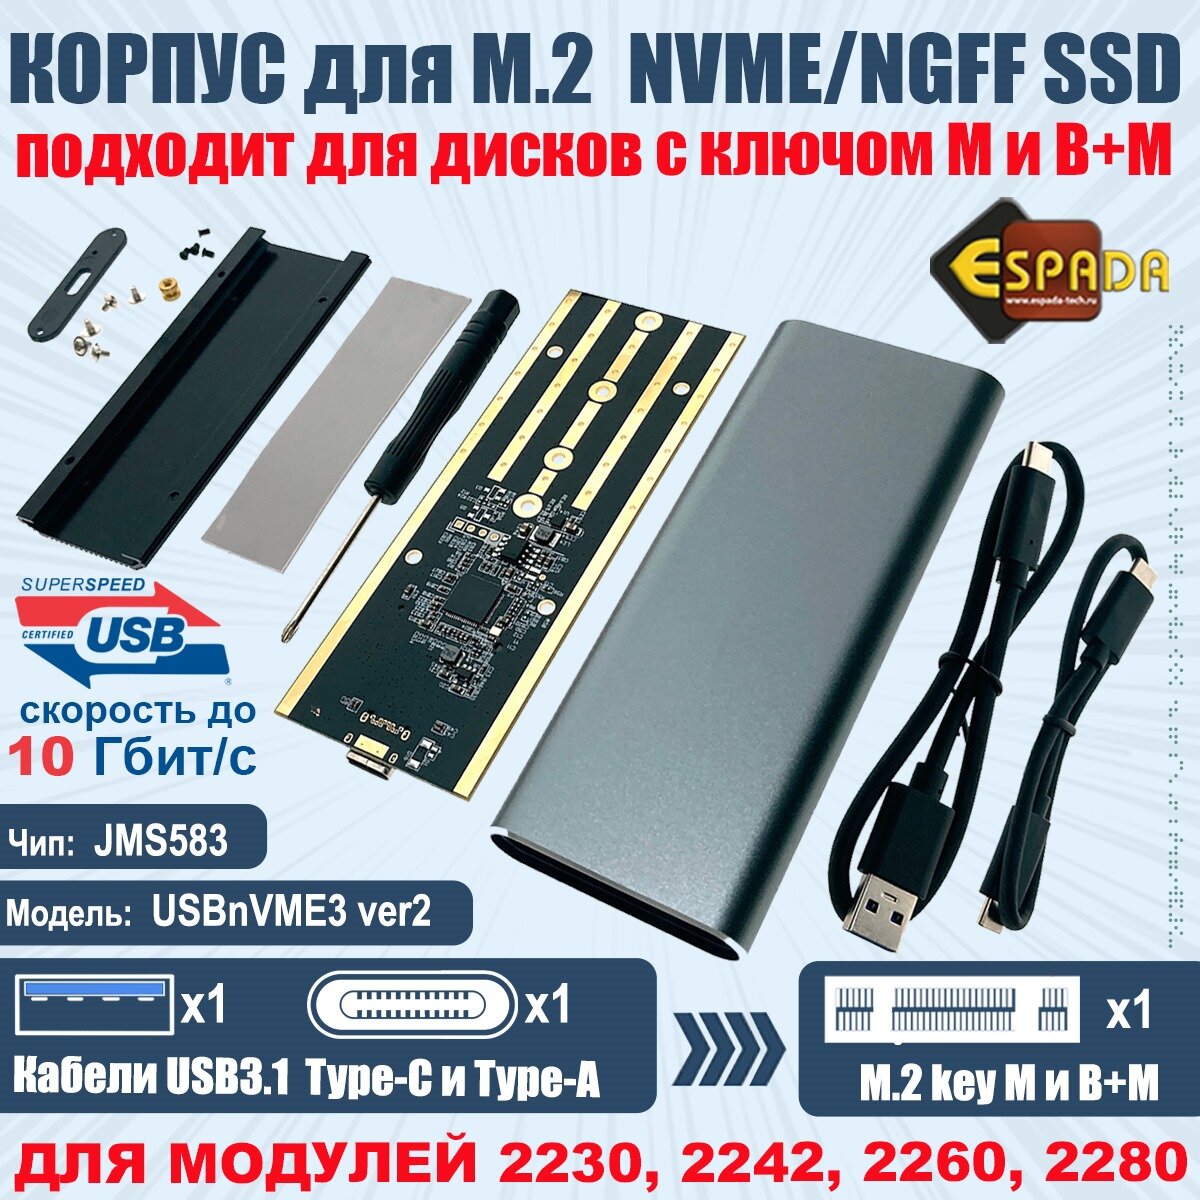 Внешний корпус Espada USB3.1 для M.2 nVME SSD, key M, ver2 (USBnVME3) (45578)